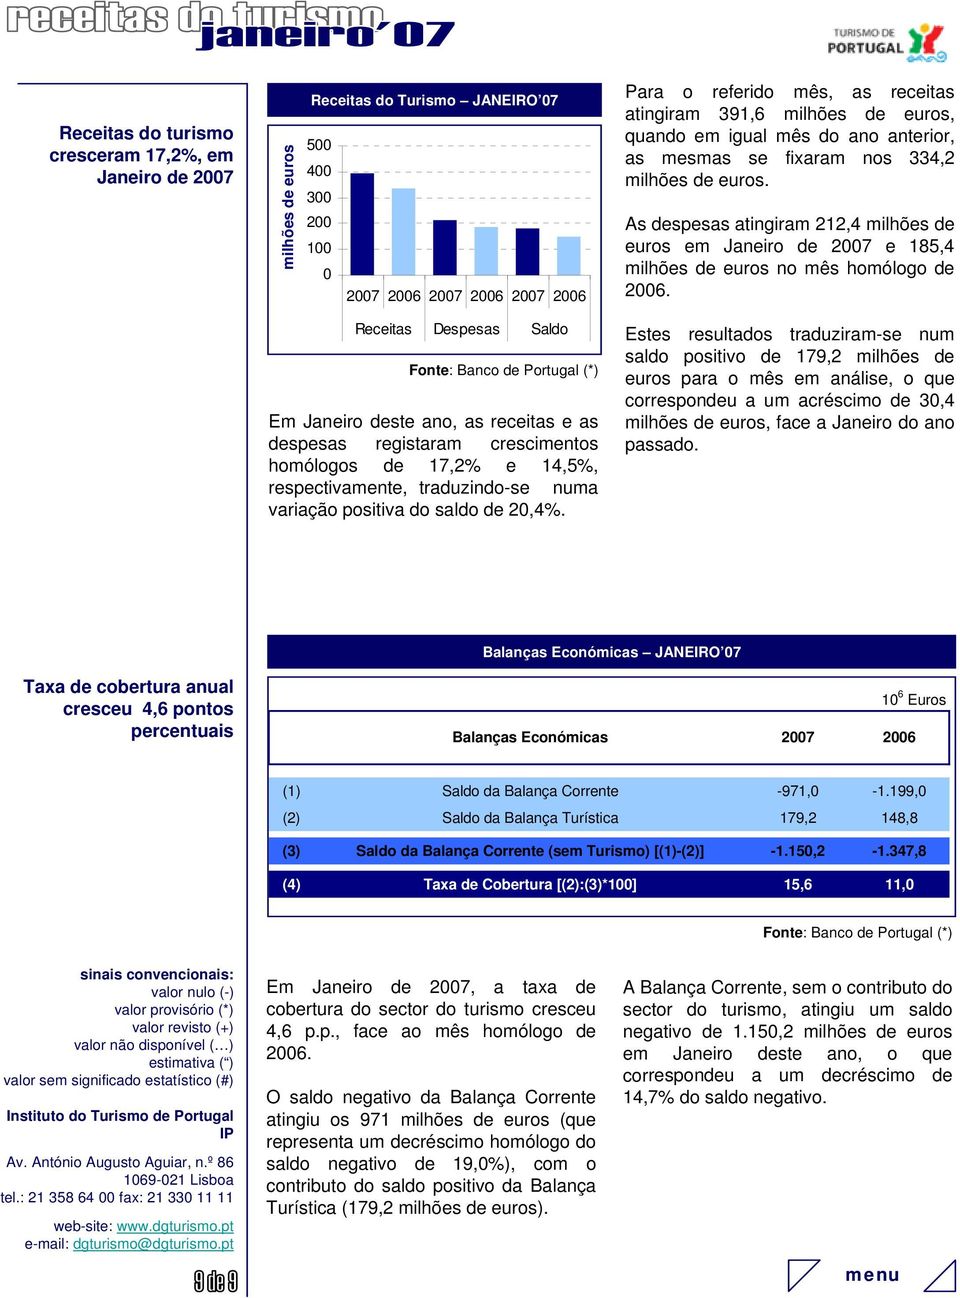 Receitas Despesas Saldo Fonte: Banco de Portugal (*) Em Janeiro deste ano, as receitas e as despesas registaram crescimentos homólogos de 17,2% e 14,5%, respectivamente, traduzindo-se numa variação